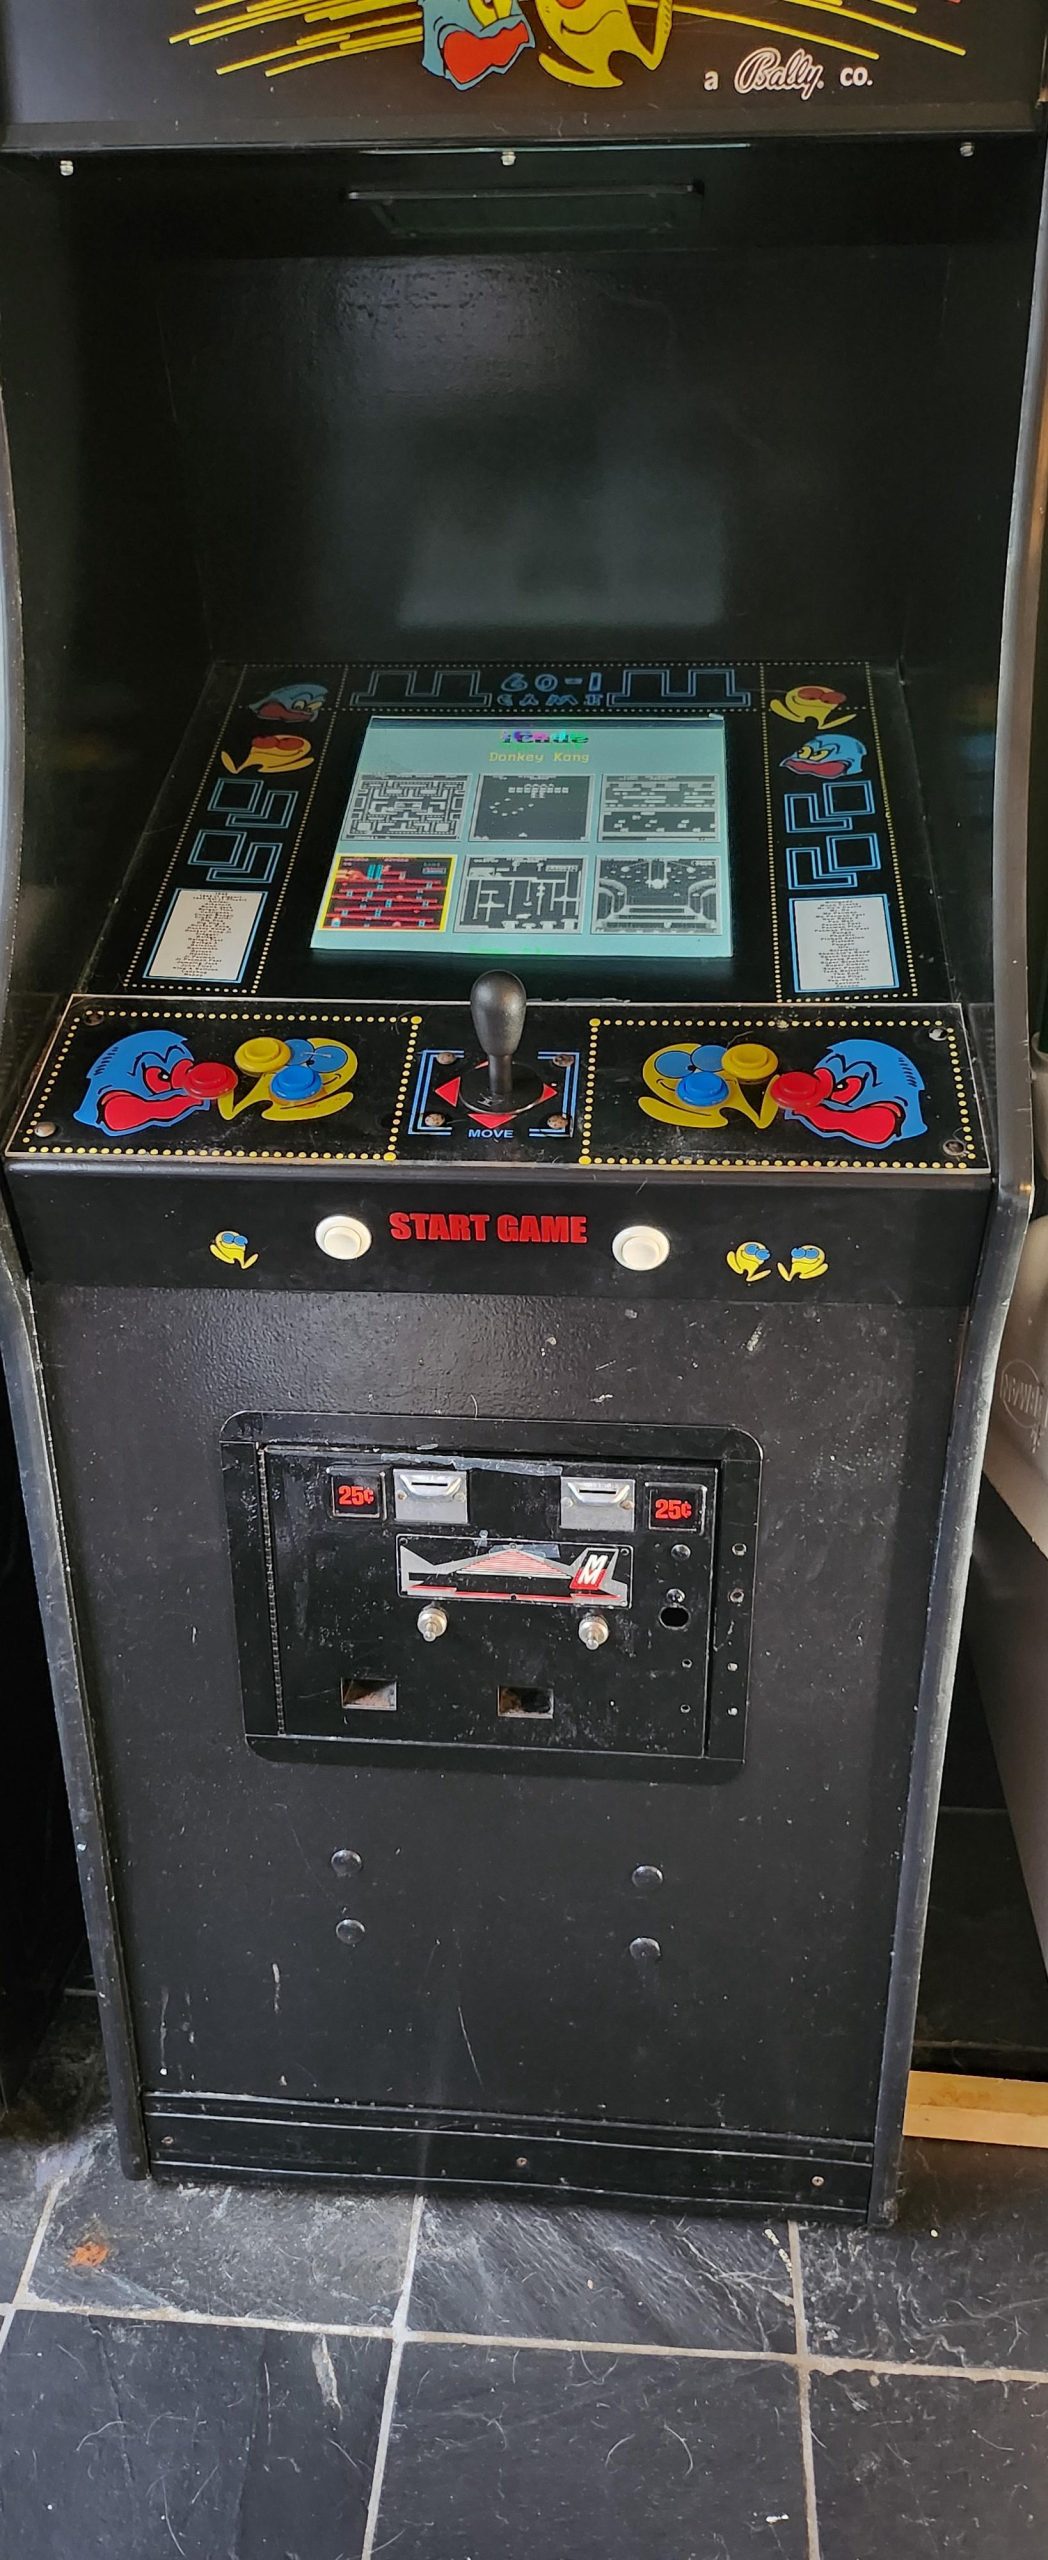 My retro gaming arcade setup.